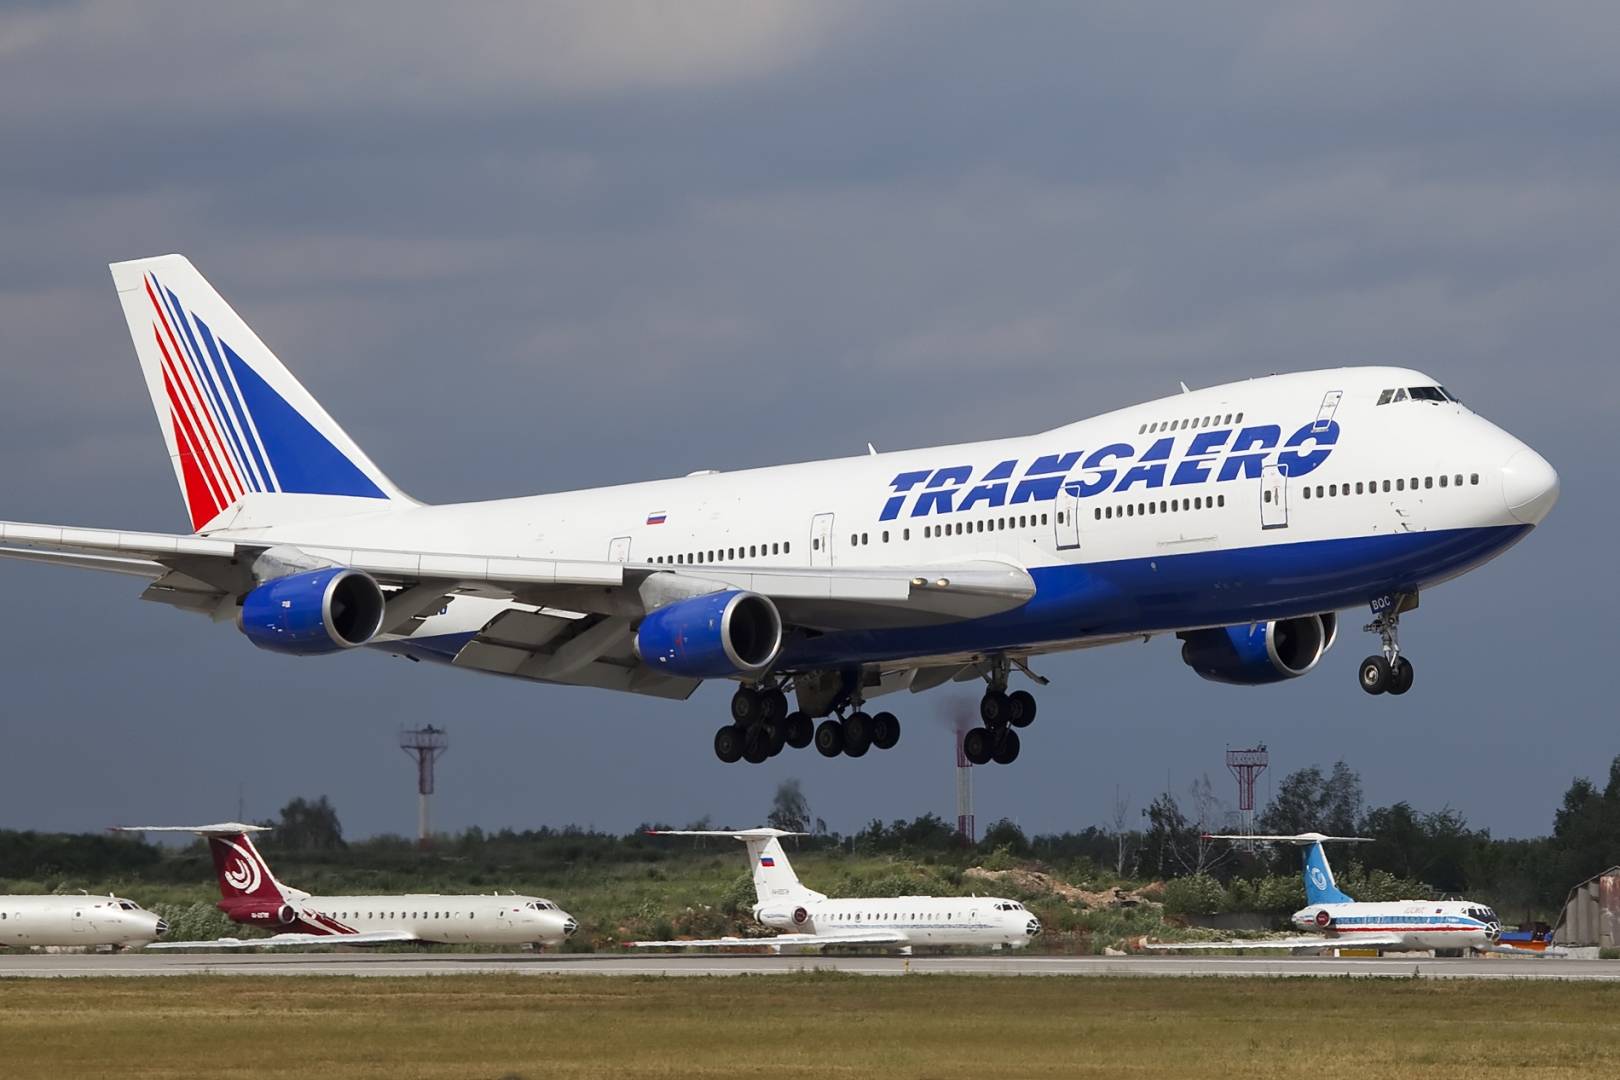 Авиакомпания трансаэро (transaero) — авиакомпании и авиалинии россии и мира